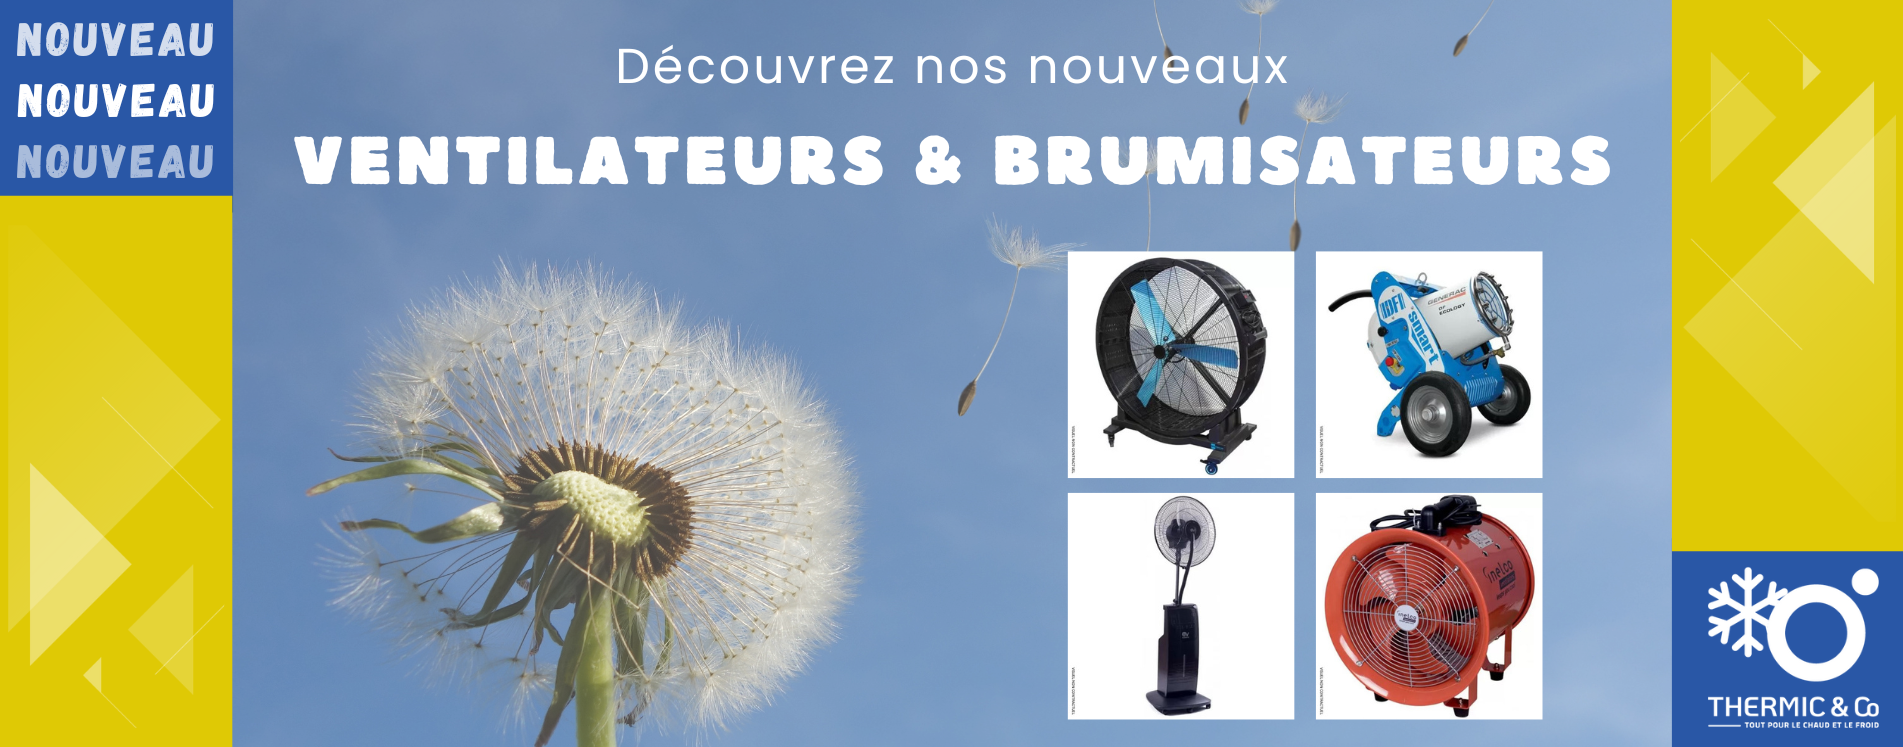 Nouveaux Ventilateurs et Brumisateurs chez Thermic & Co